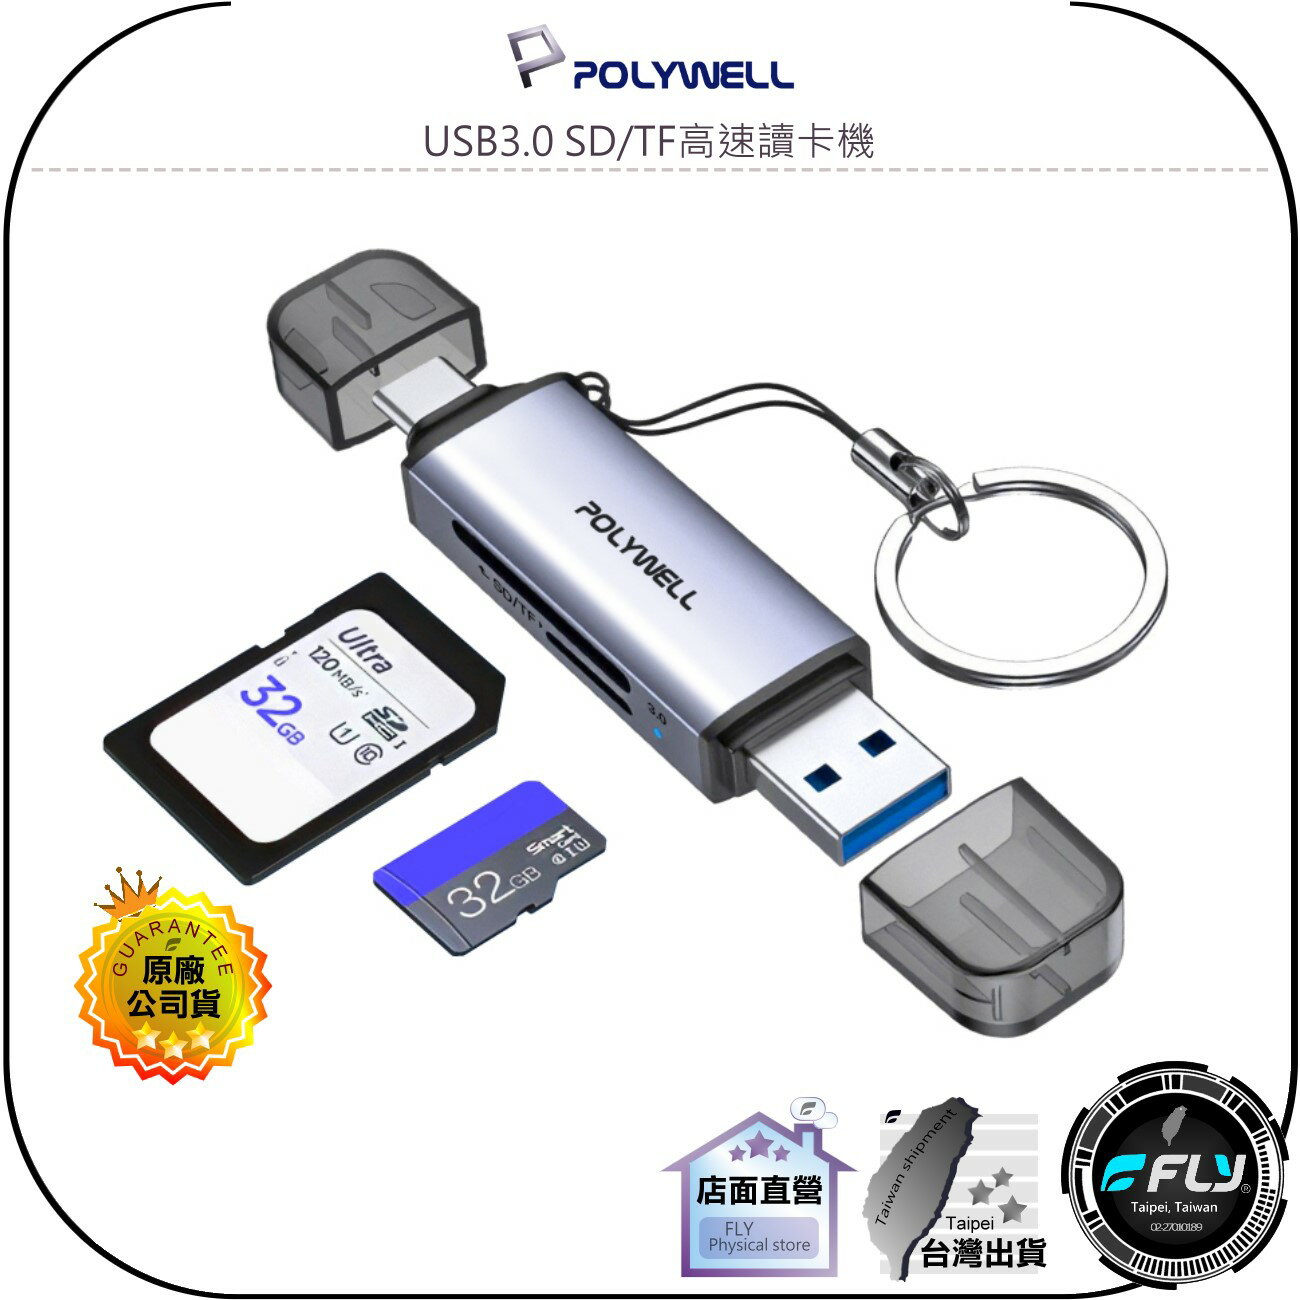 【飛翔商城】POLYWELL 寶利威爾 USB3.0 SD/TF高速讀卡機◉公司貨◉USB-A TYPE-C 雙插頭